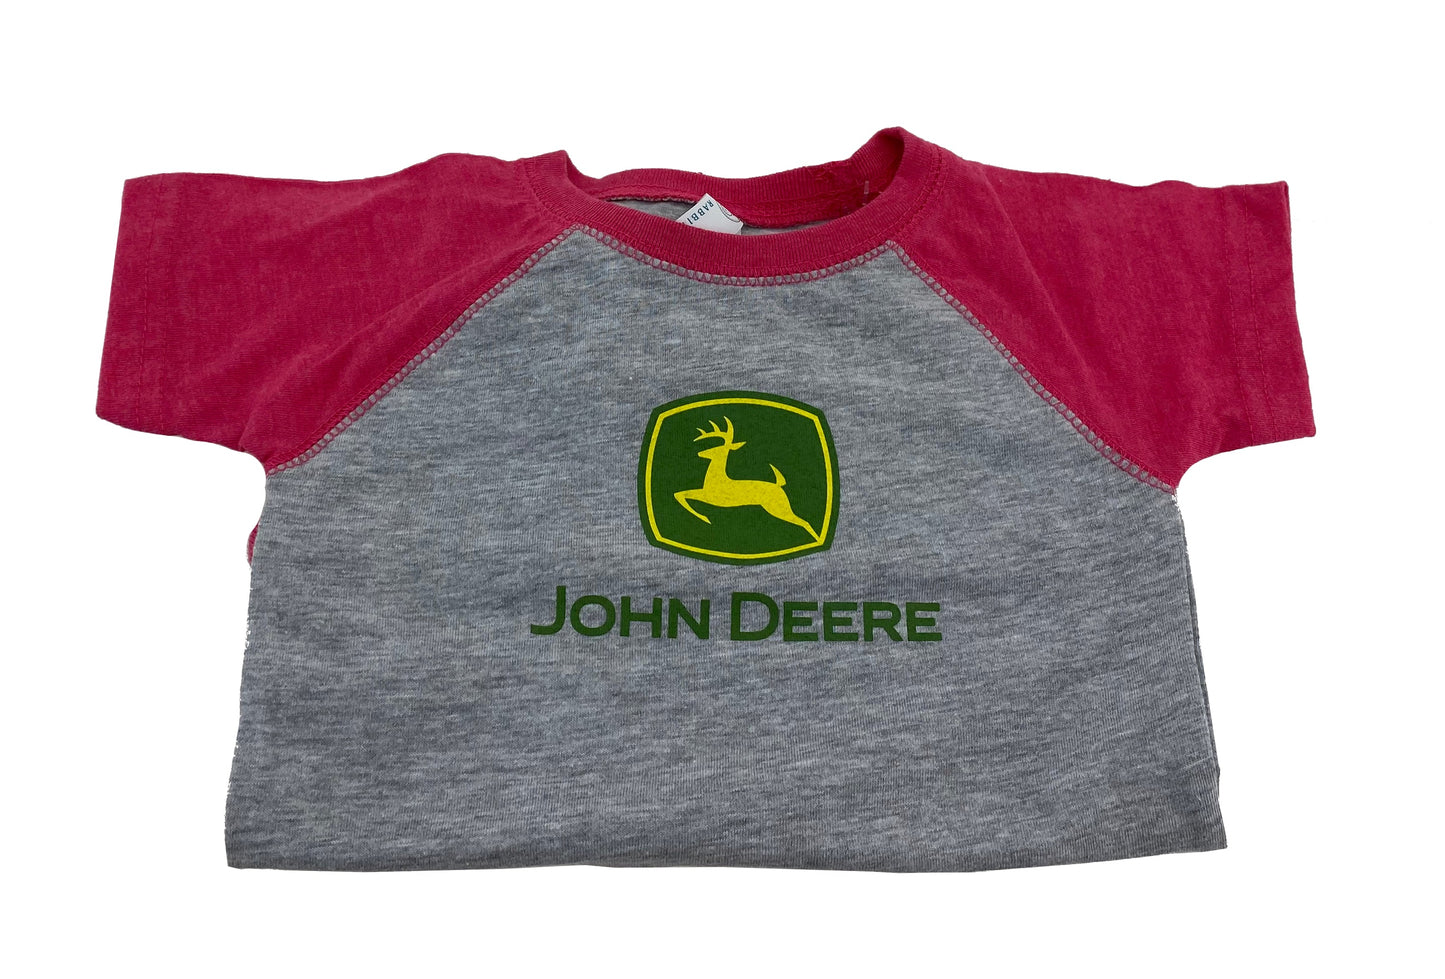 John Deere Girls Infant Body Suit 12 Months - LP74801